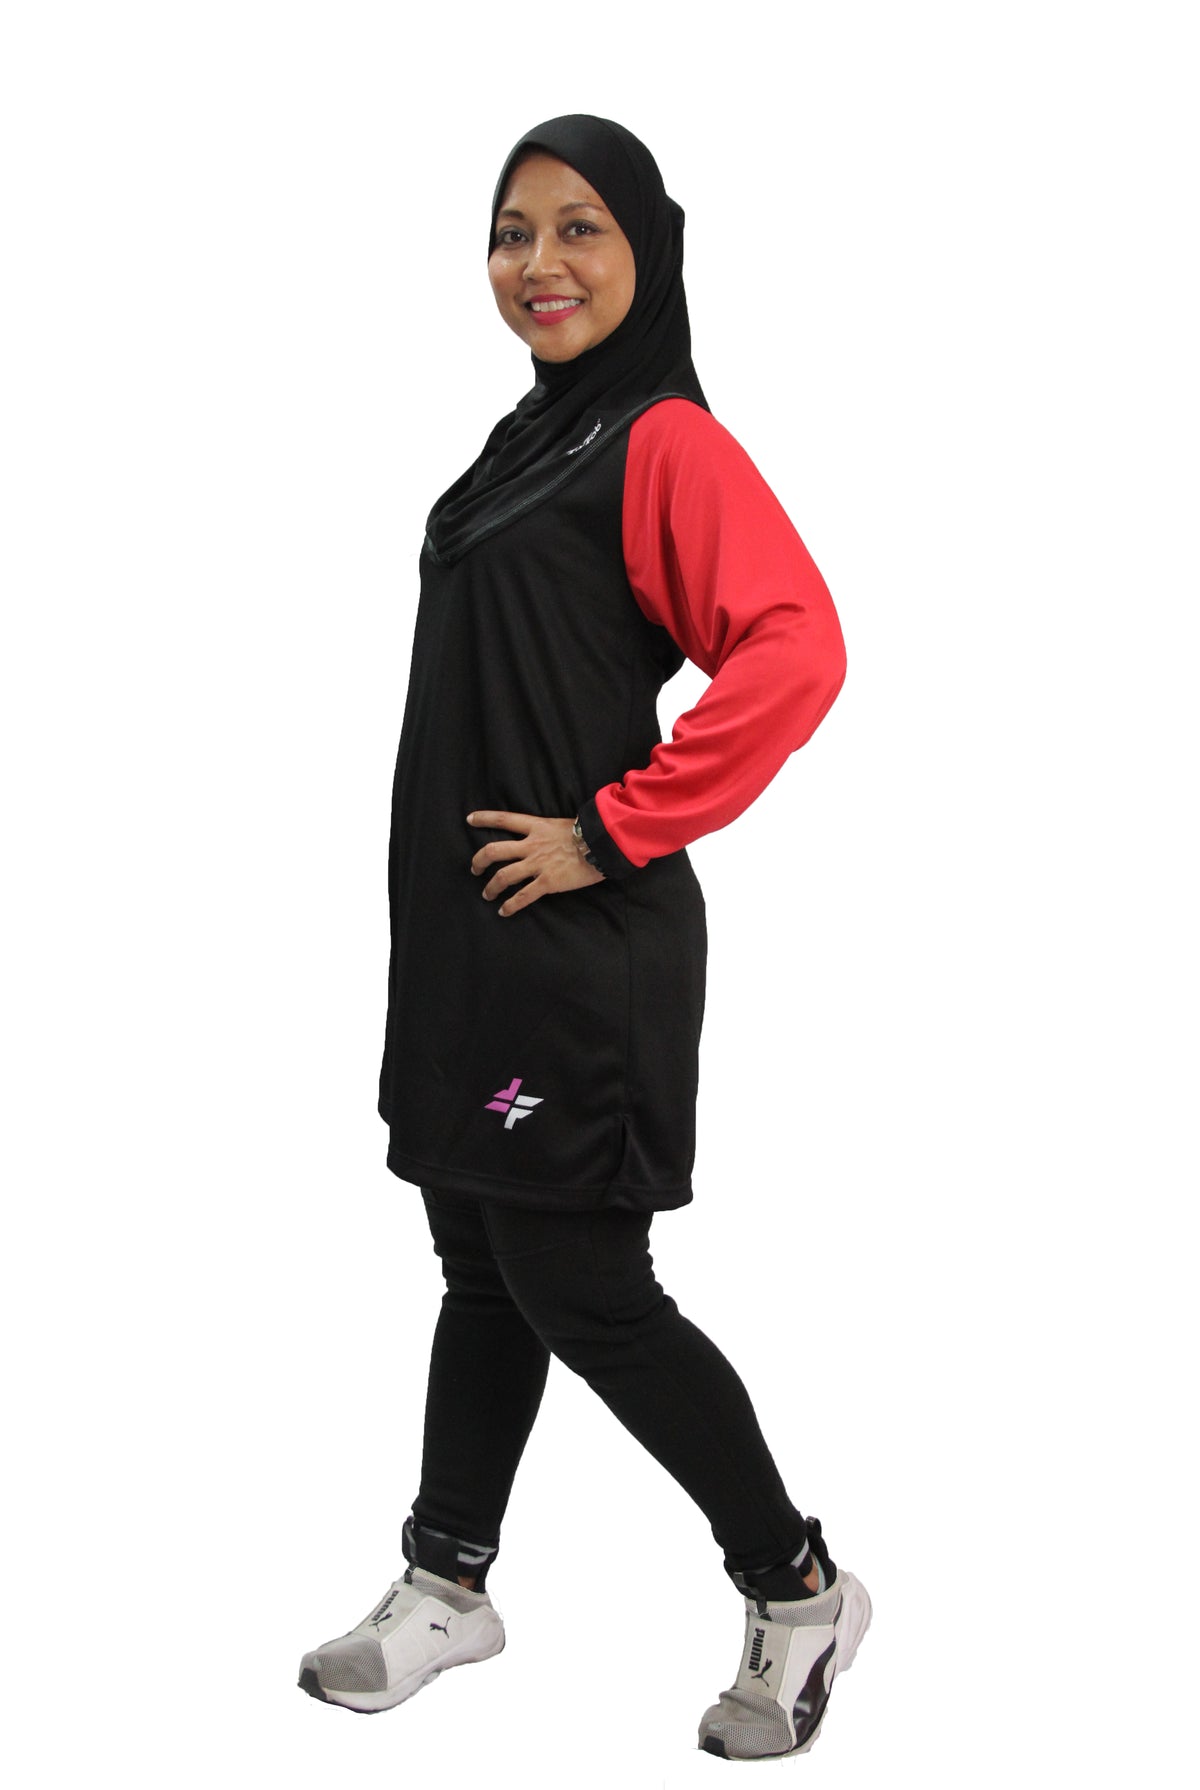 ACTIVEwear Muslimah Black-Red